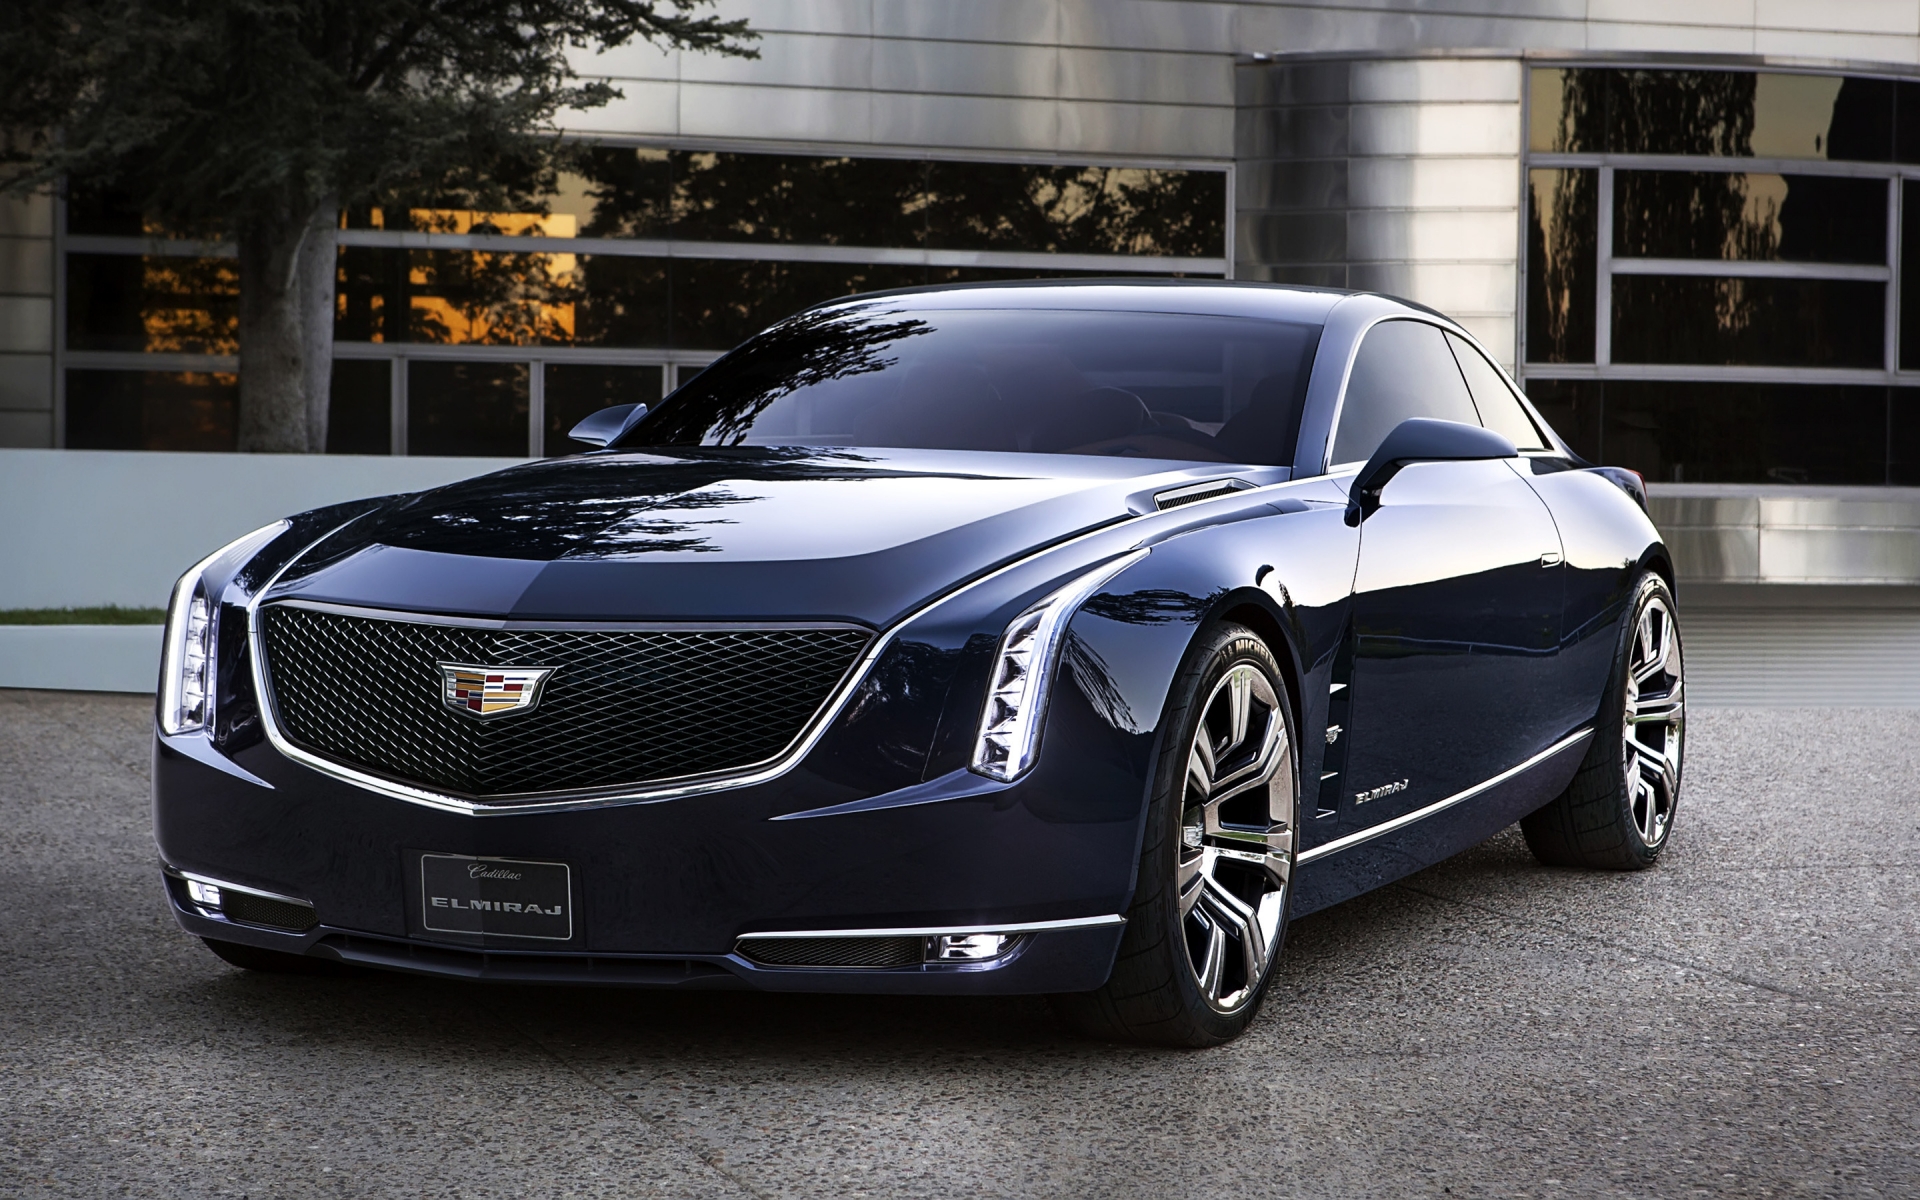 2013 Cadillac Elmiraj Concept for 1920 x 1200 widescreen resolution